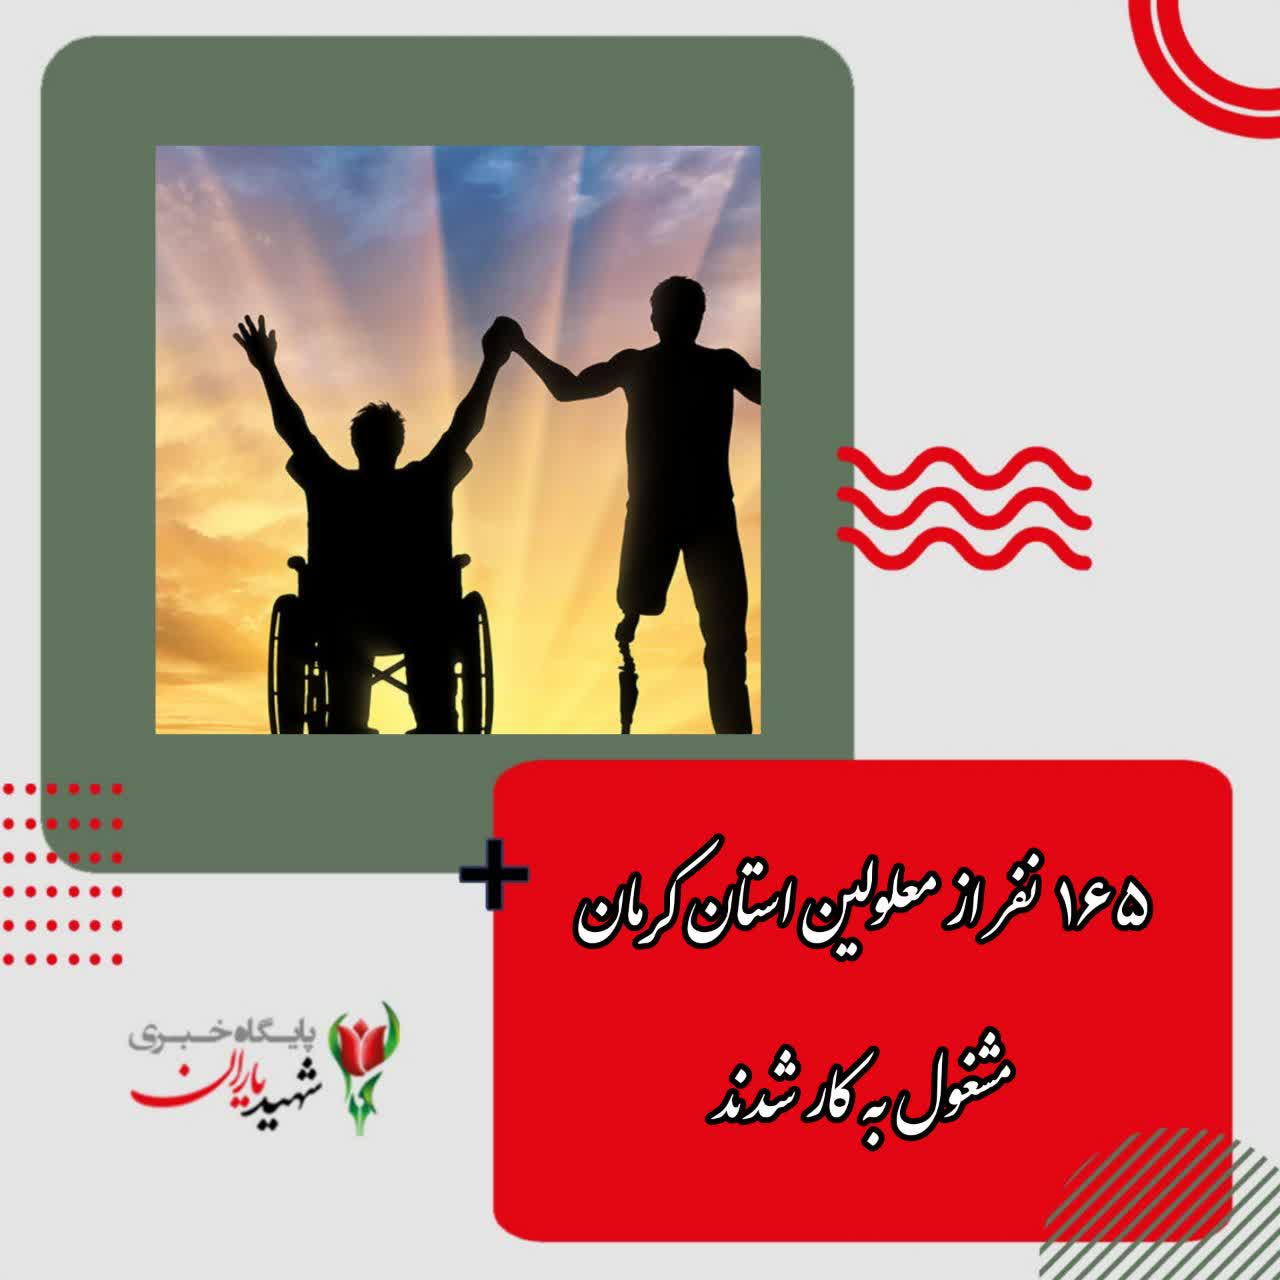  ۱۶۵ نفر از معلولین استان کرمان مشغول به کار شدند